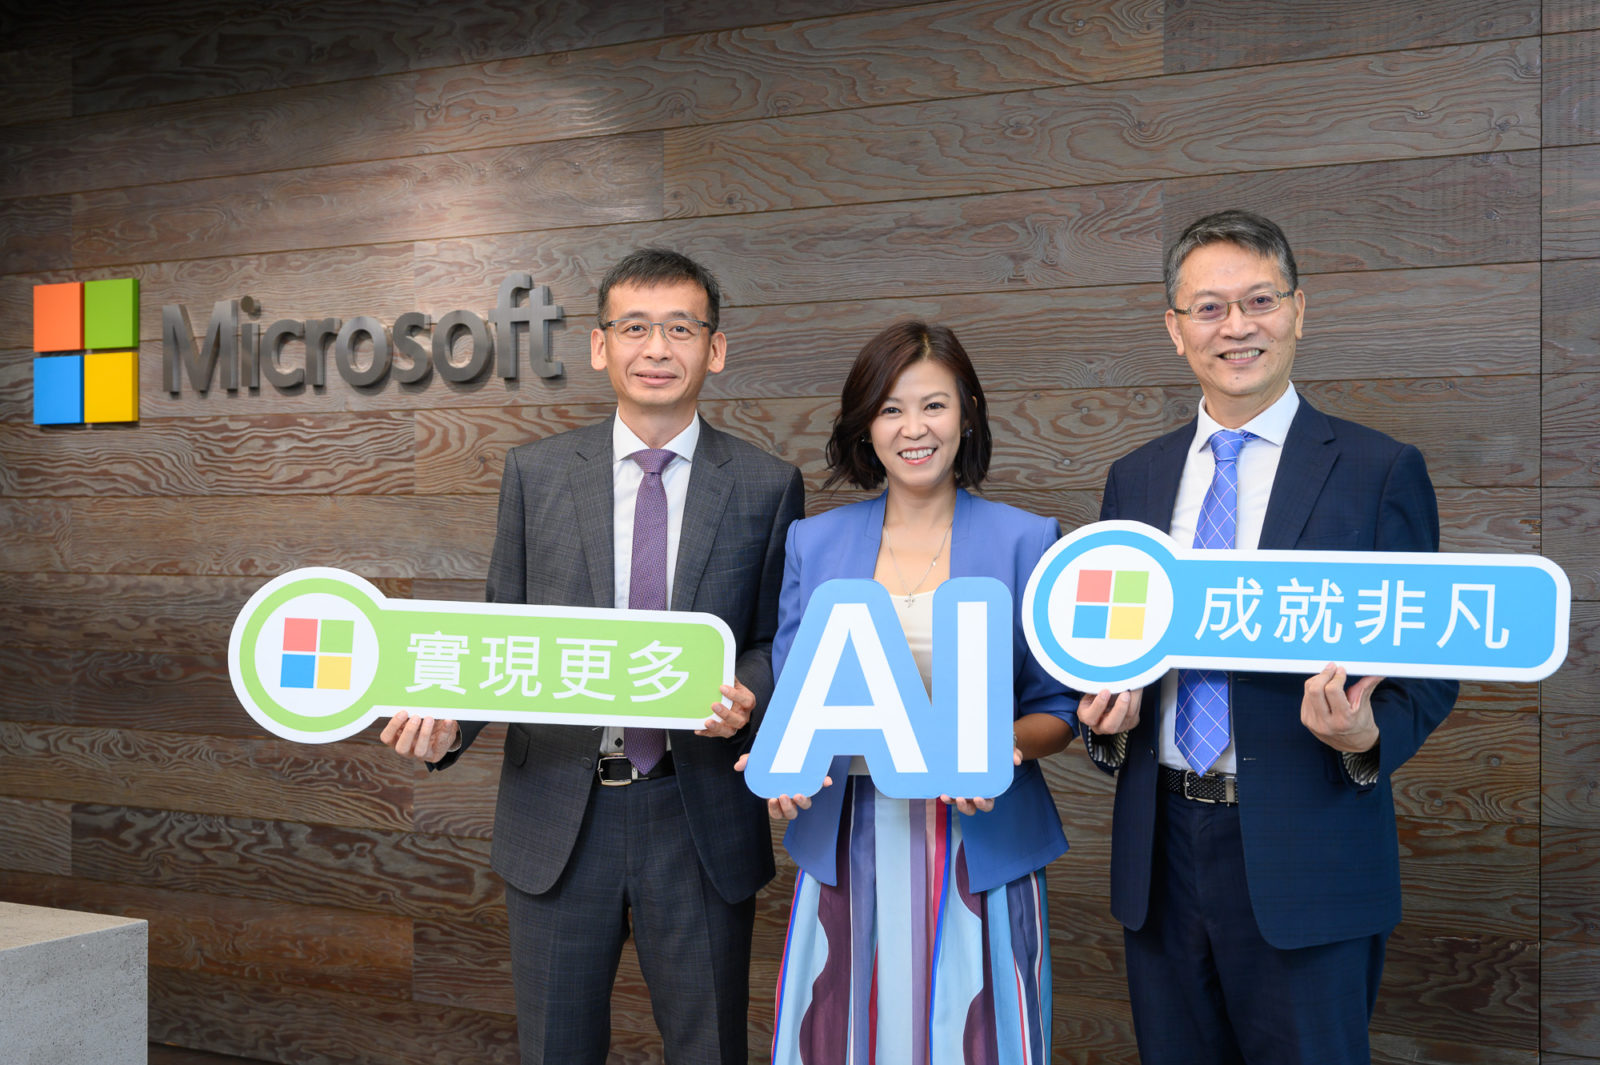 左起為政大商學院副院長邱奕嘉、台灣微軟首席營運長何虹、臺灣數位企業總會理事長陳來助，藉由三強聯手整合多方資源，設計創新AI商務課程，為中小企業提供客製化轉型處方。